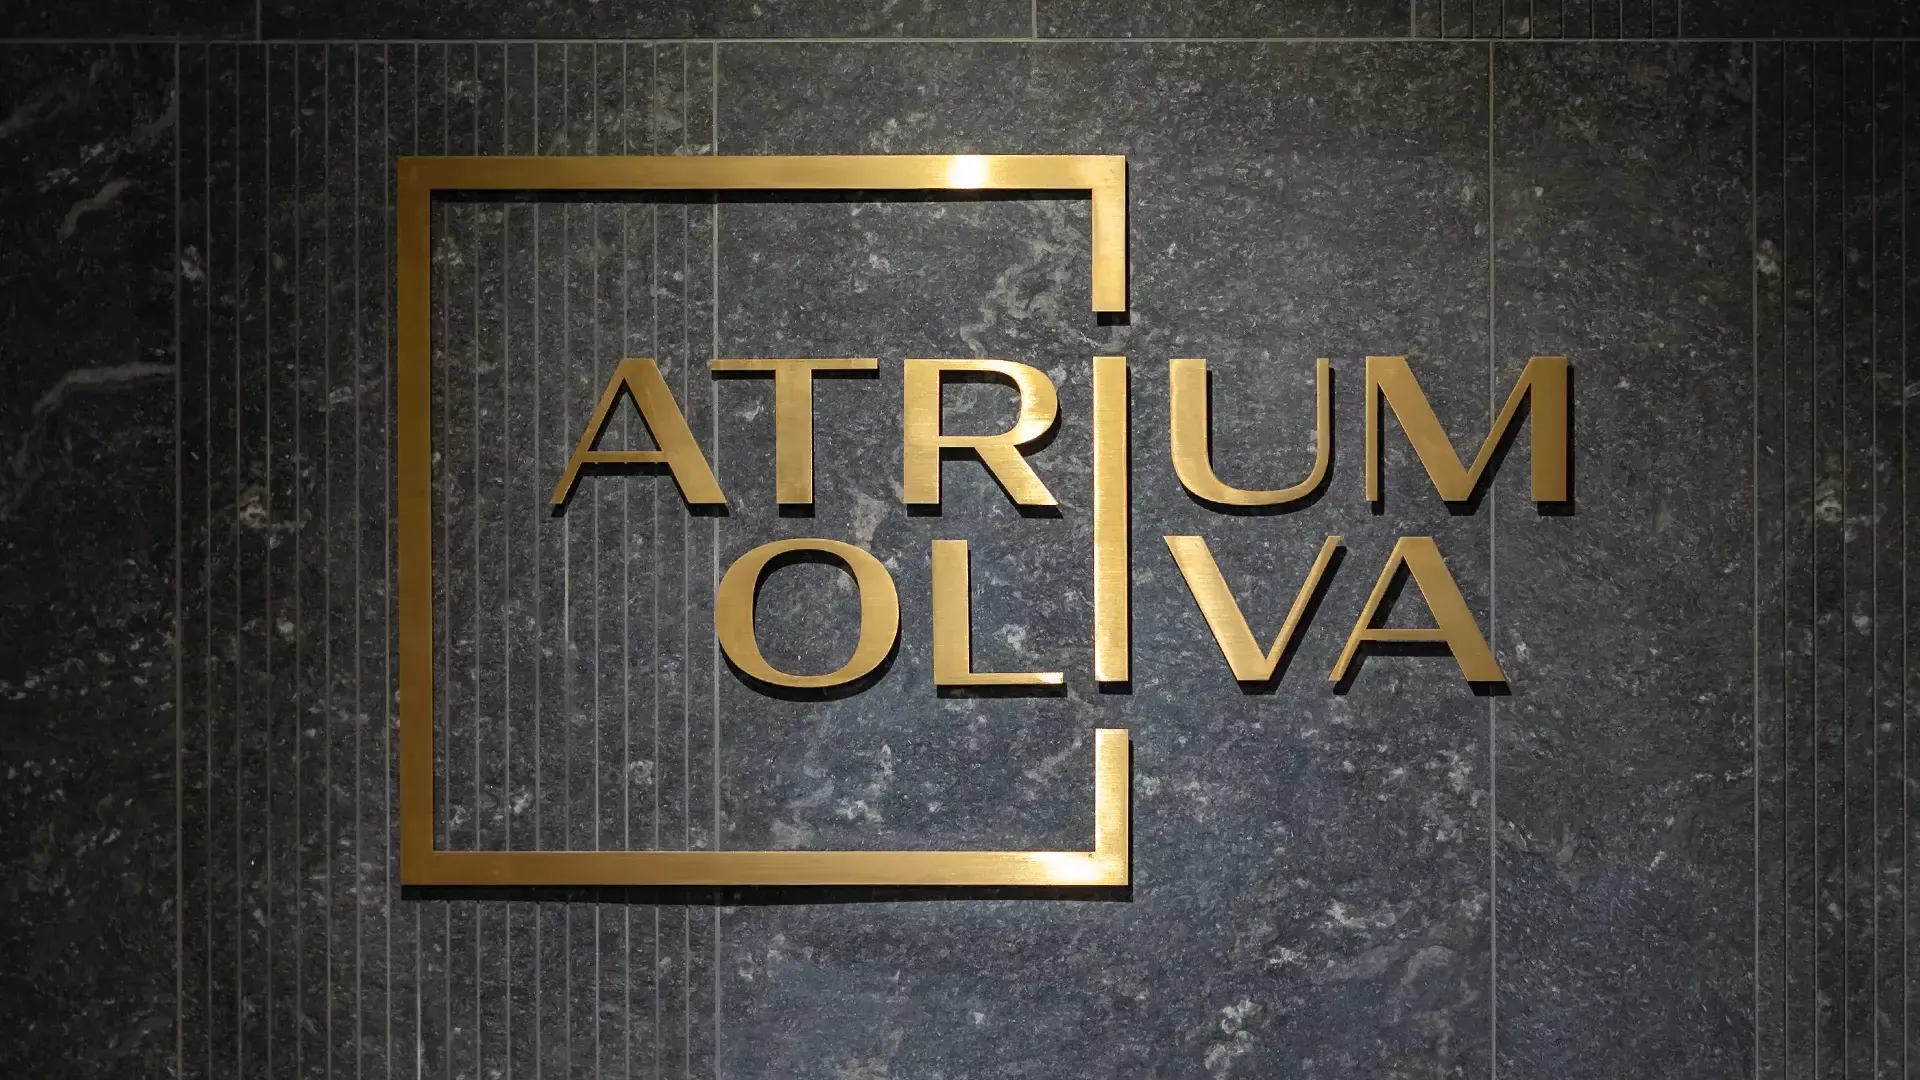 Atrium Oliva flache Buchstaben - Atrium Oliva Flachbuchstaben aus gebürstetem Blech